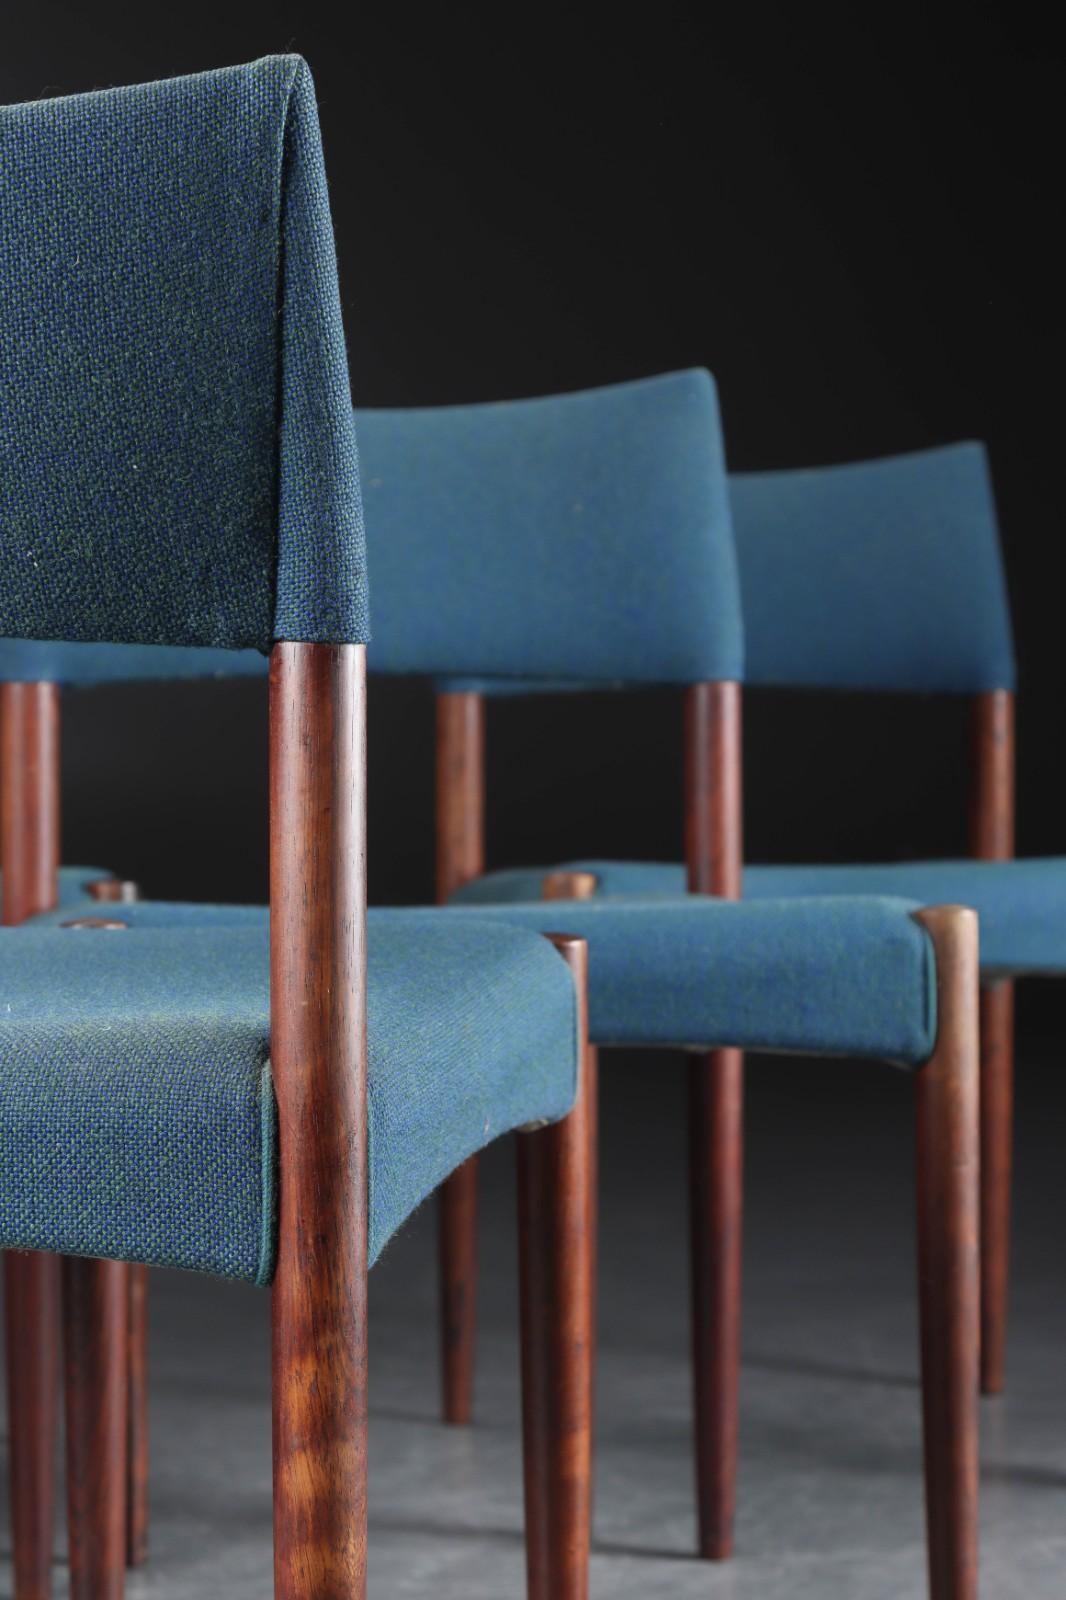 Ejner Larsen und Aksel Bender-Madsen ein Satz von sechs Esszimmerstühlen mit Hartholzrahmen und rund zulaufenden Beinen. Sitz und Rückenlehne mit Wollstoff gepolstert.
Entworfen im Jahr 1955, hergestellt von Tischlermeister Willy Beck.